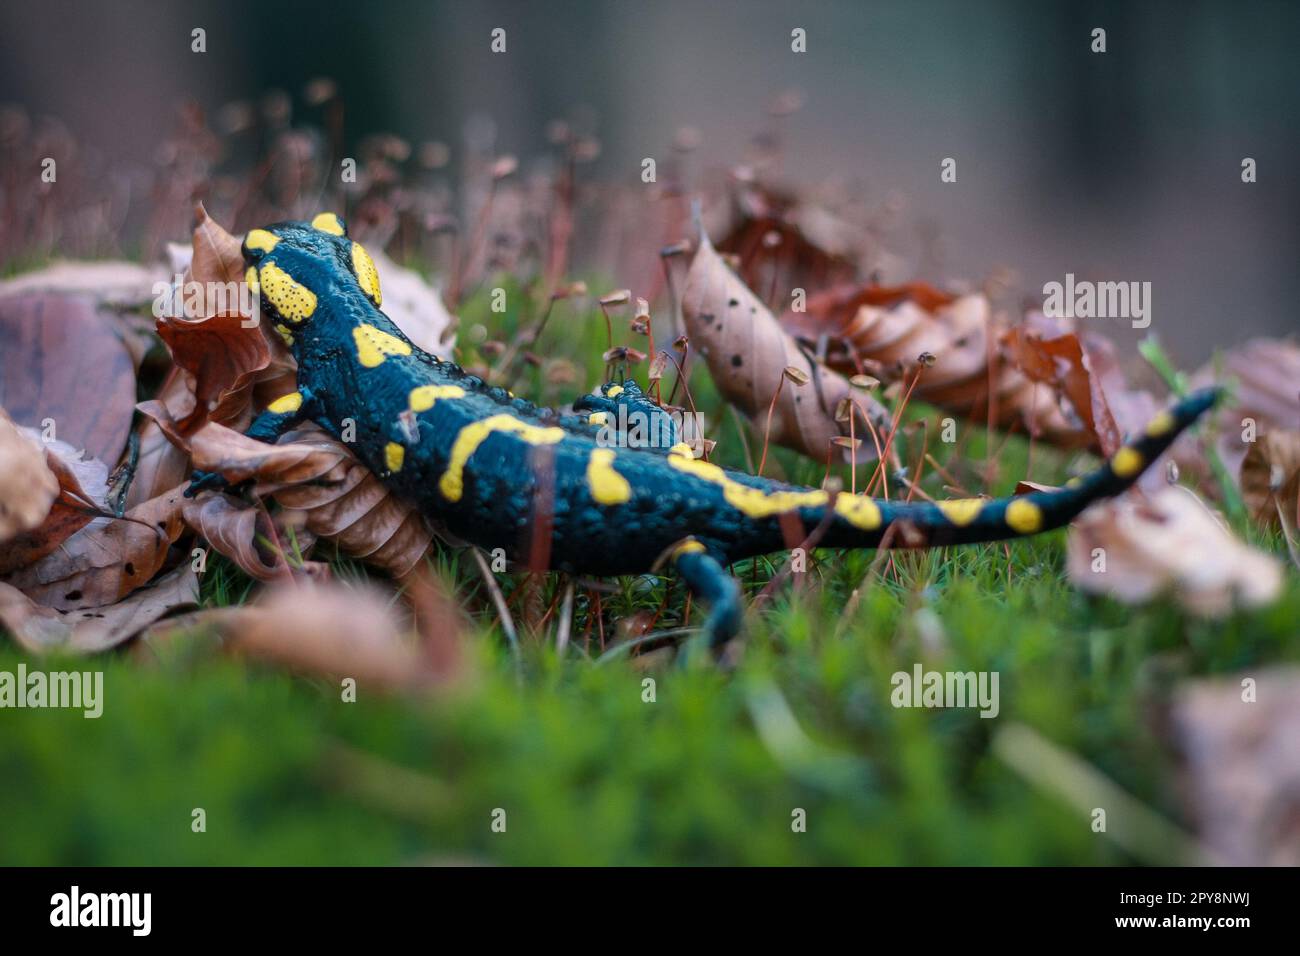 Nahaufnahme von salamandra in trockenen Blättern Konzeptfoto Stockfoto